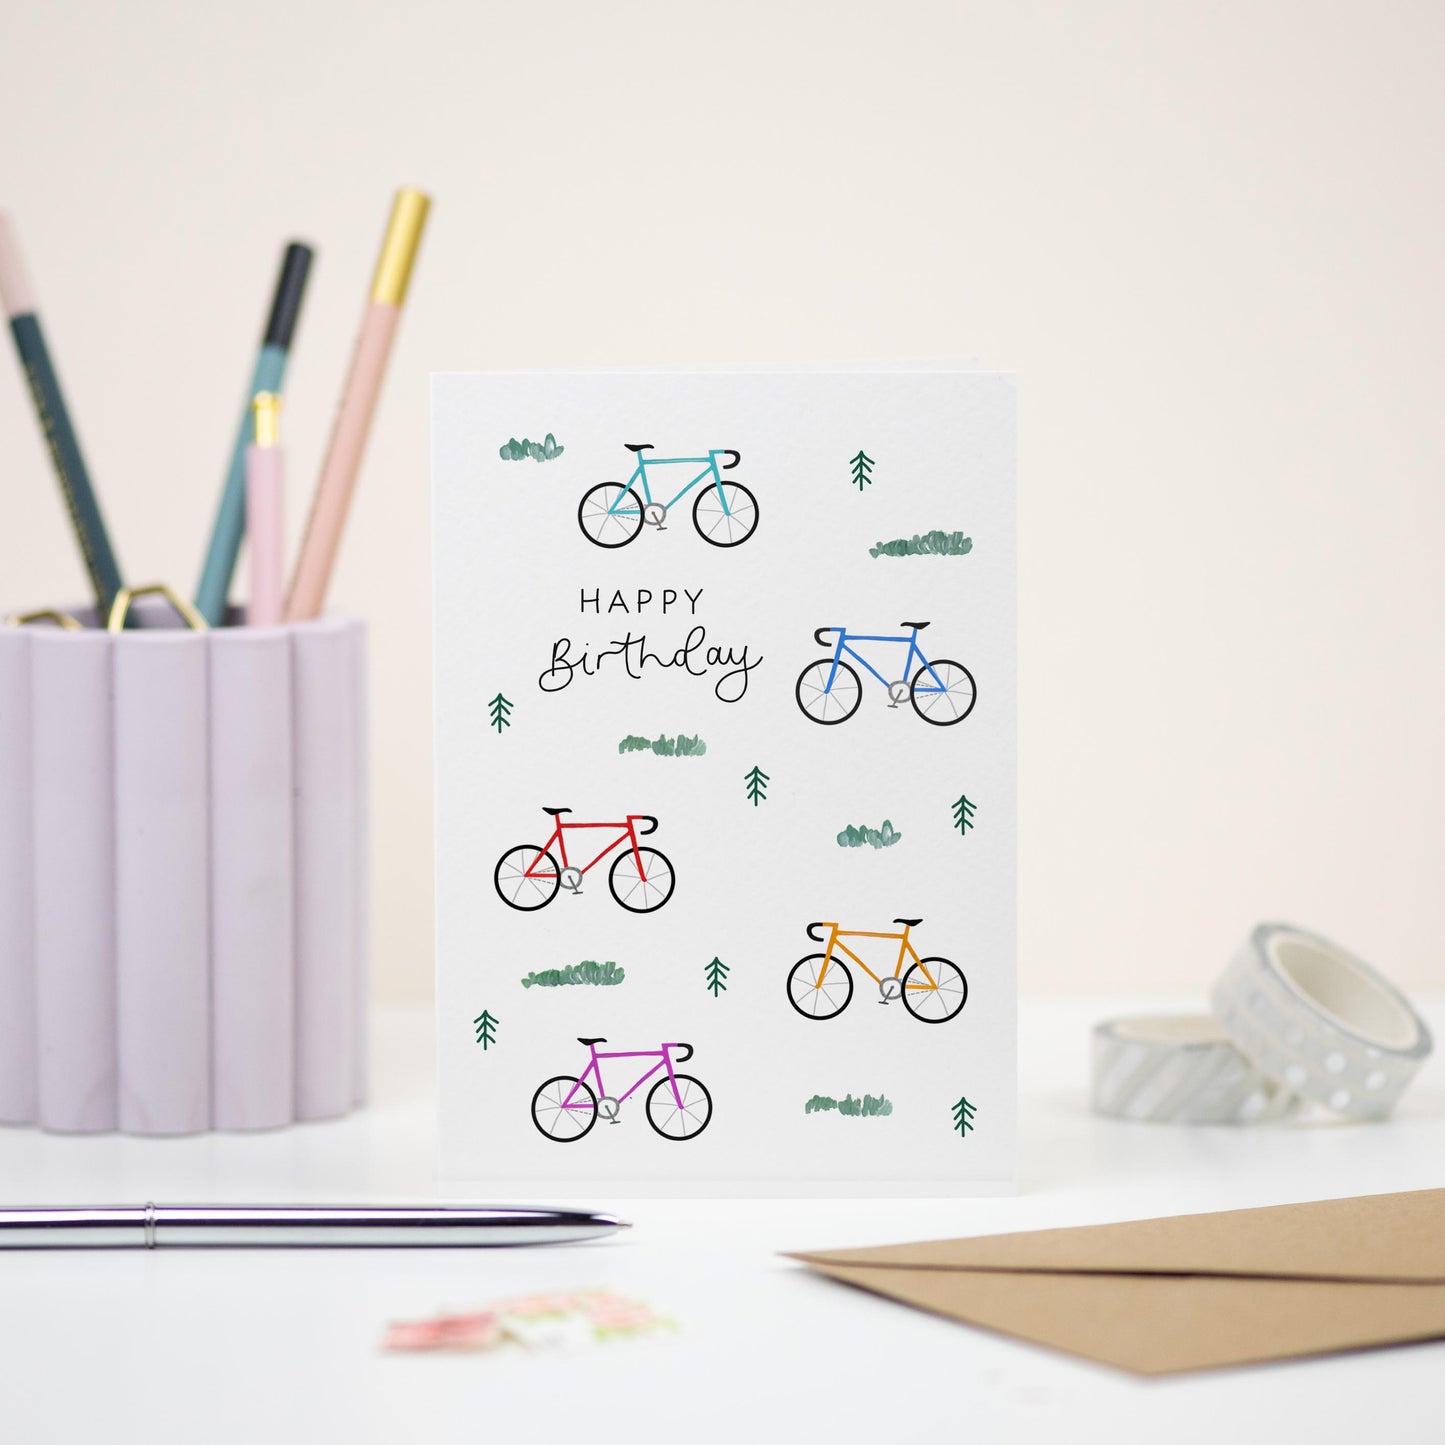 Happy Birthday Cycling Card